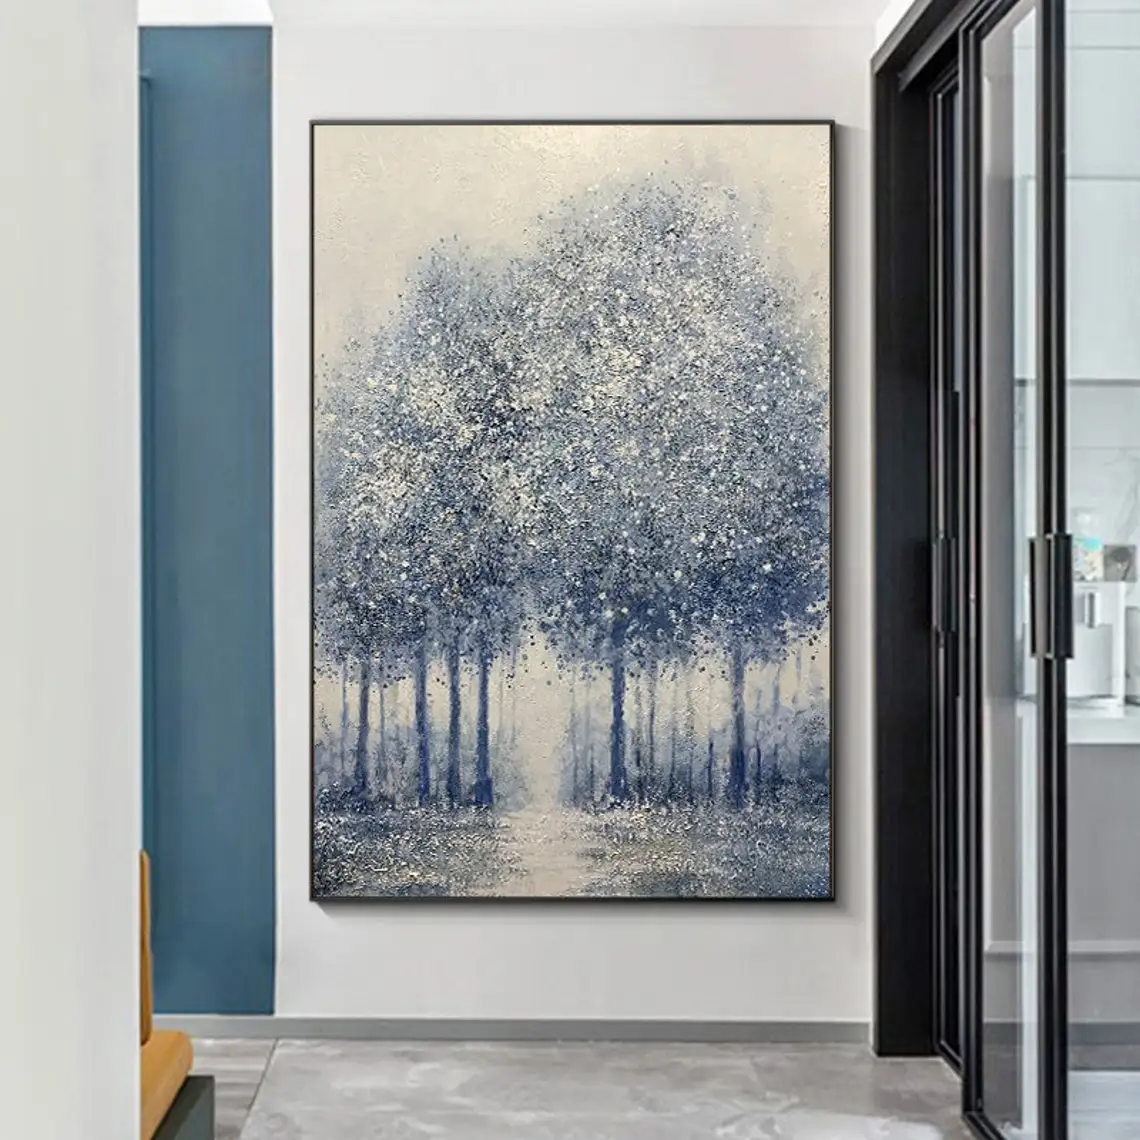 

Оригинальная абстрактная картина маслом Синего леса ручная роспись на холсте большое современное дерево Пейзаж текстура акриловая живопись настенное искусство